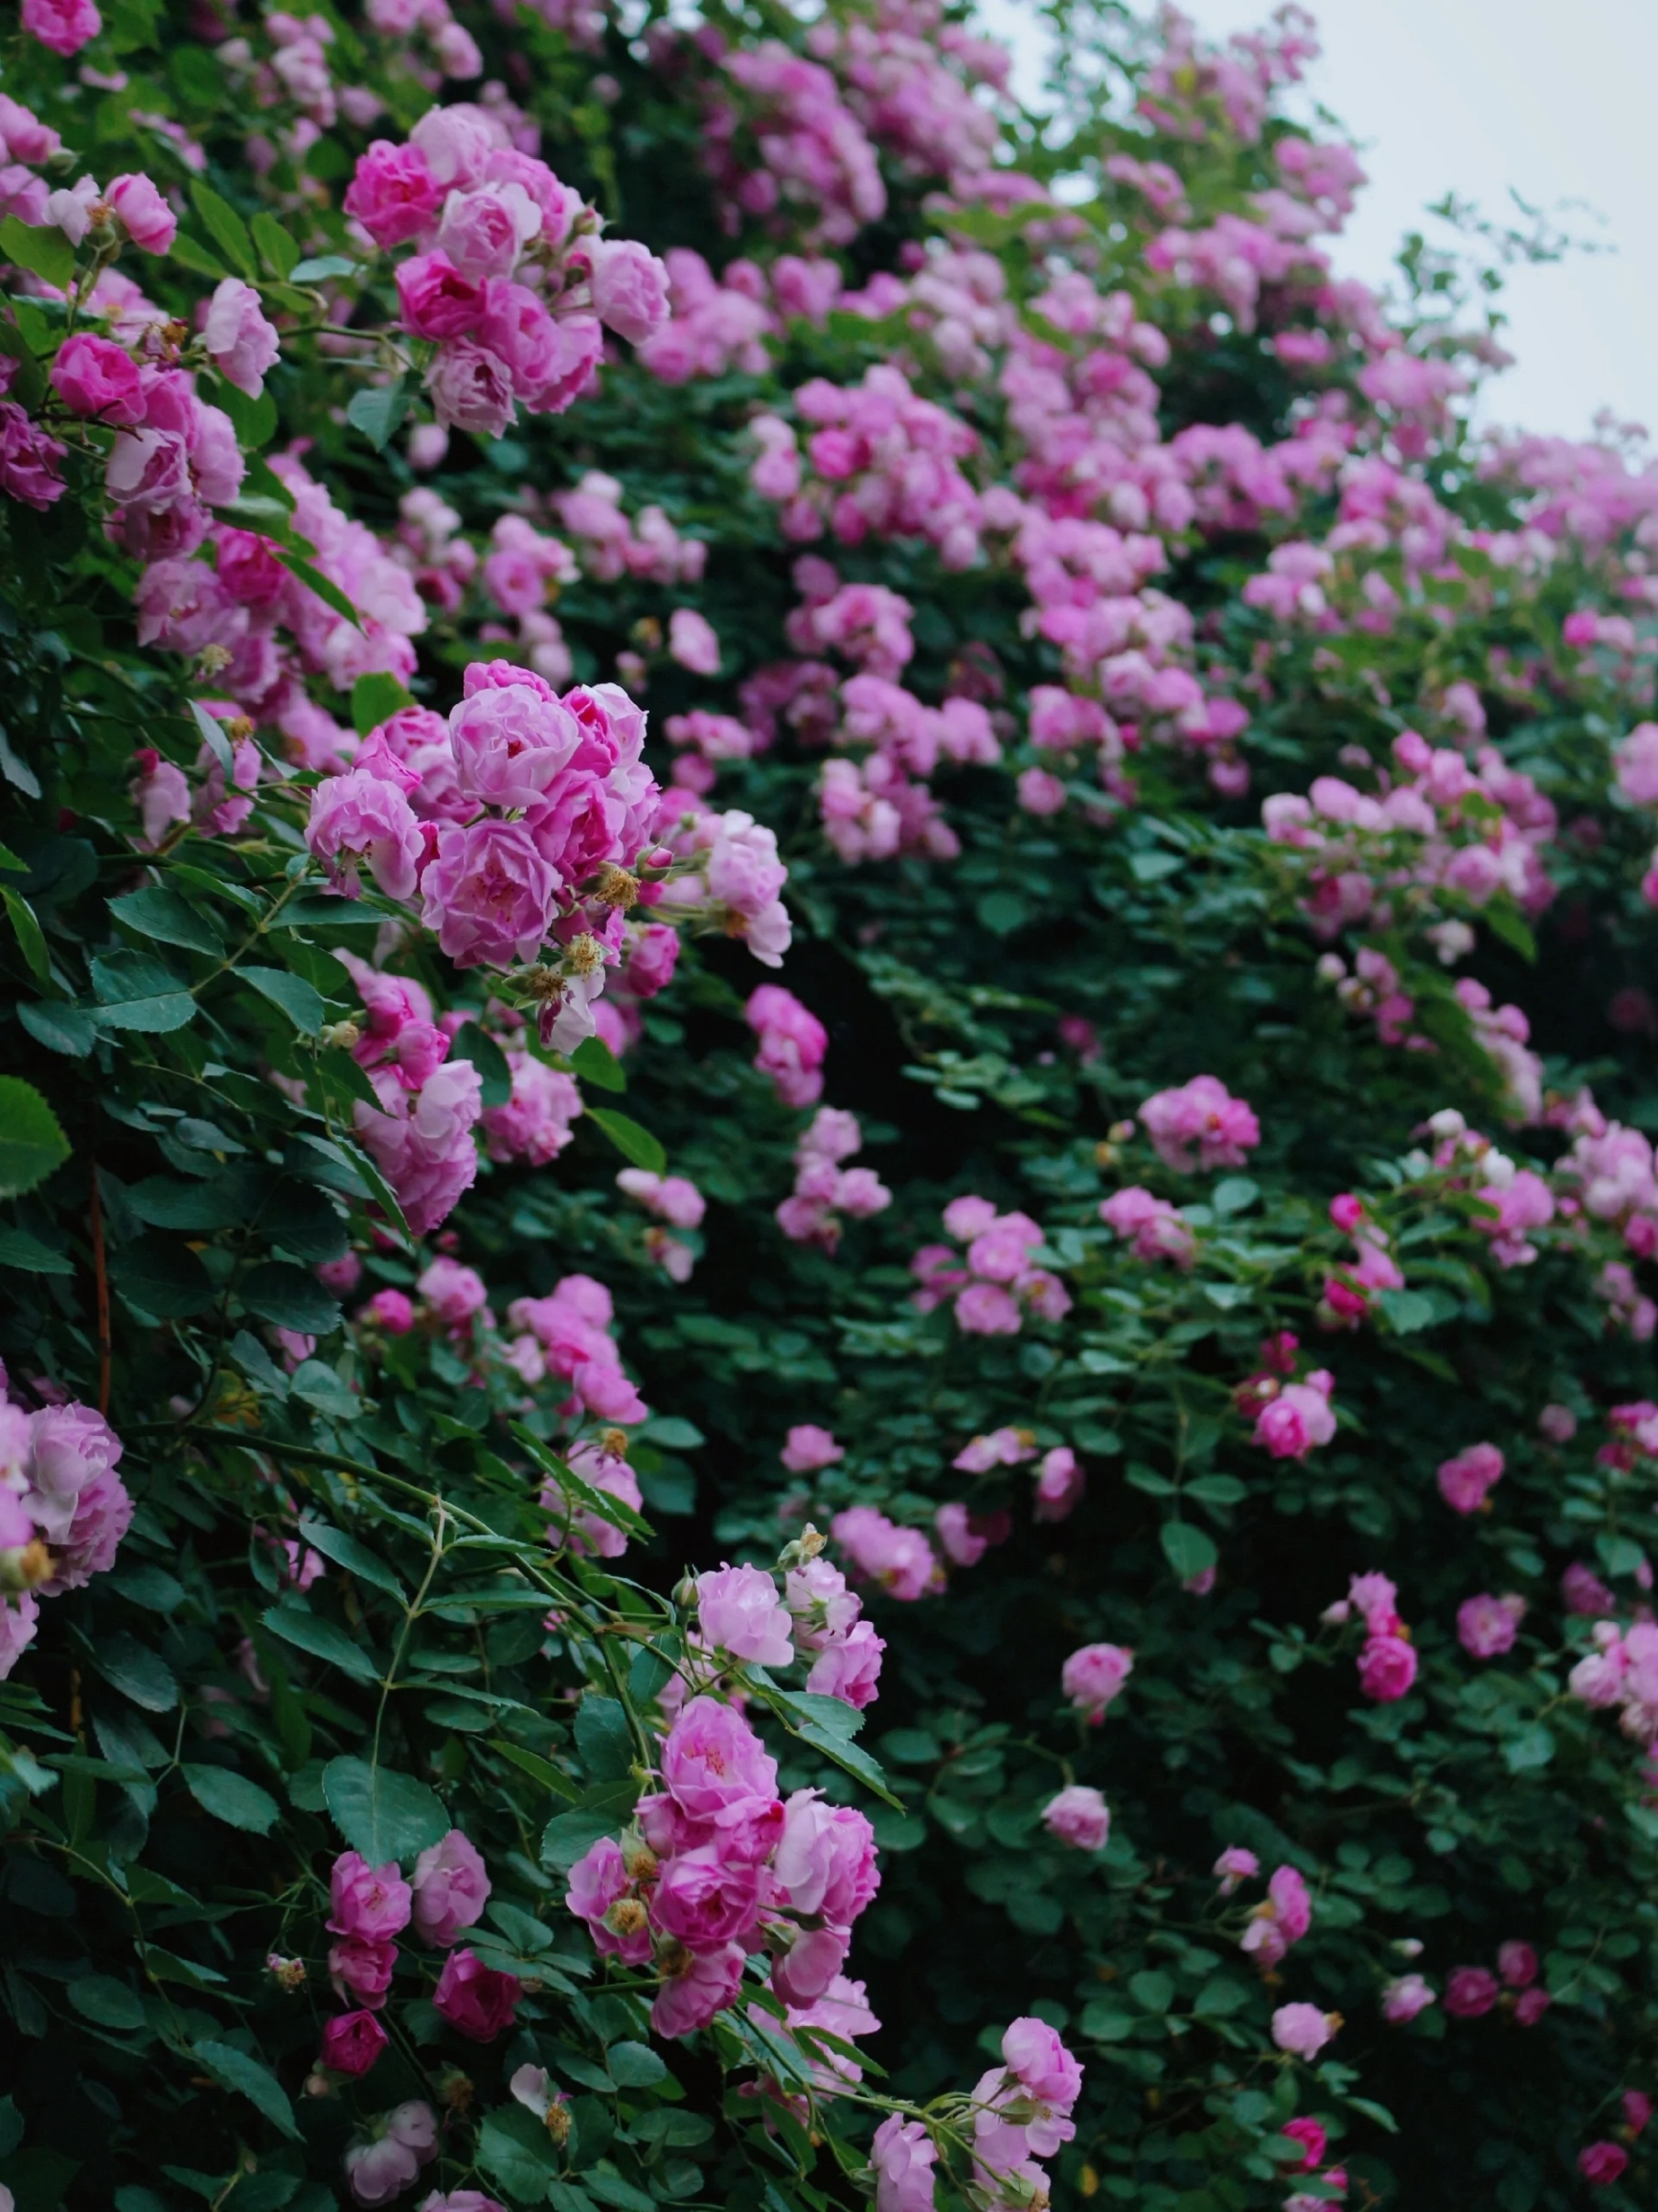 蔷薇花开，浪漫的5月已来!附16个蔷薇地图#春游记 蔷薇花开，浪漫5月已来。推荐一下北京值得打卡的蔷